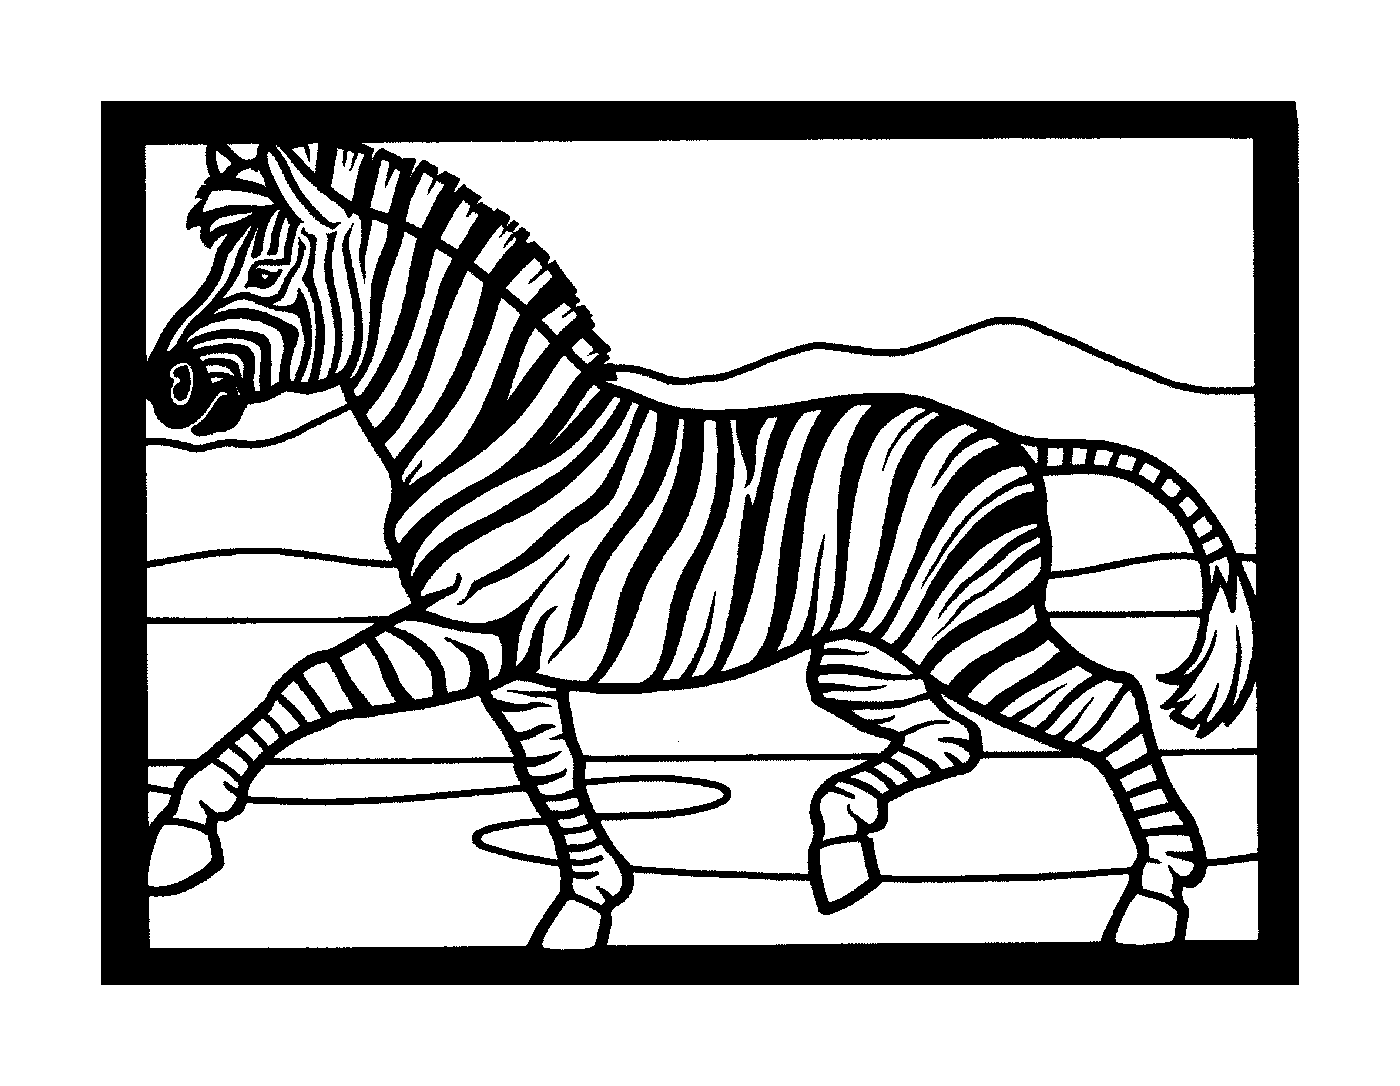  Schnelle Zebra in der Mitte des Rennens 